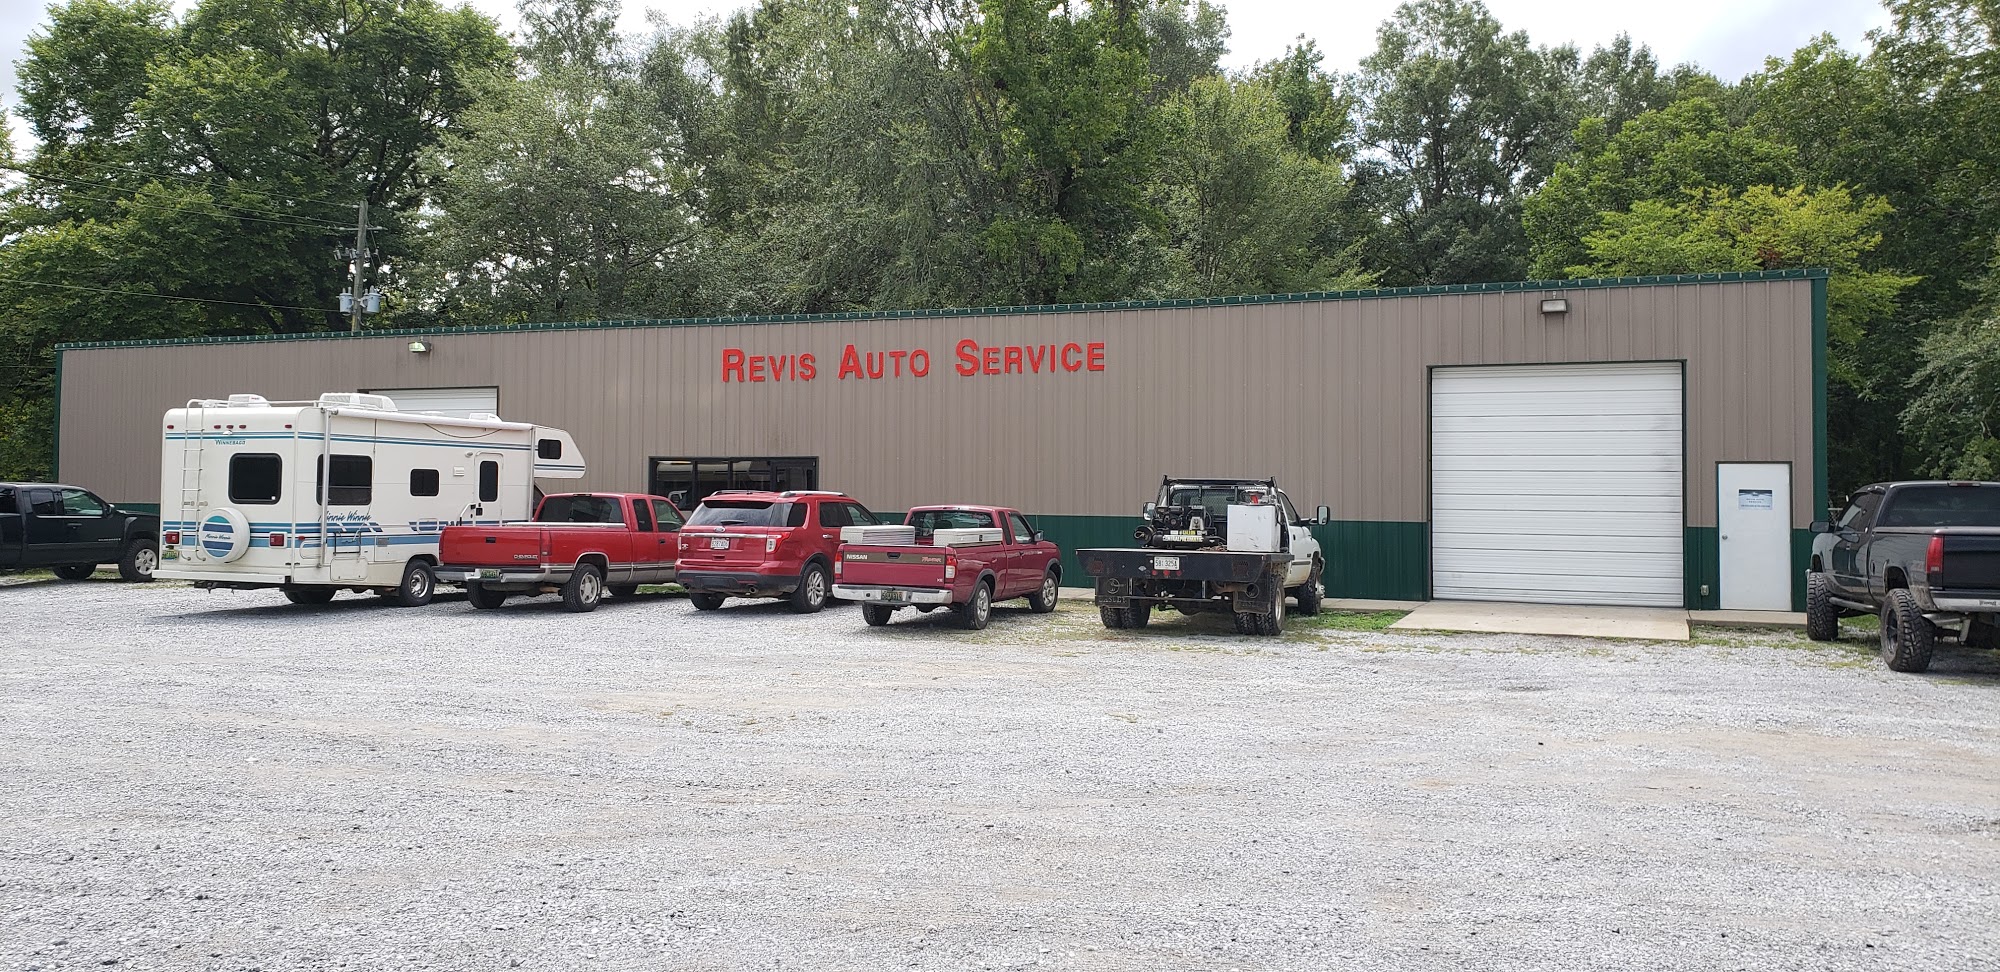 Revis Auto Services